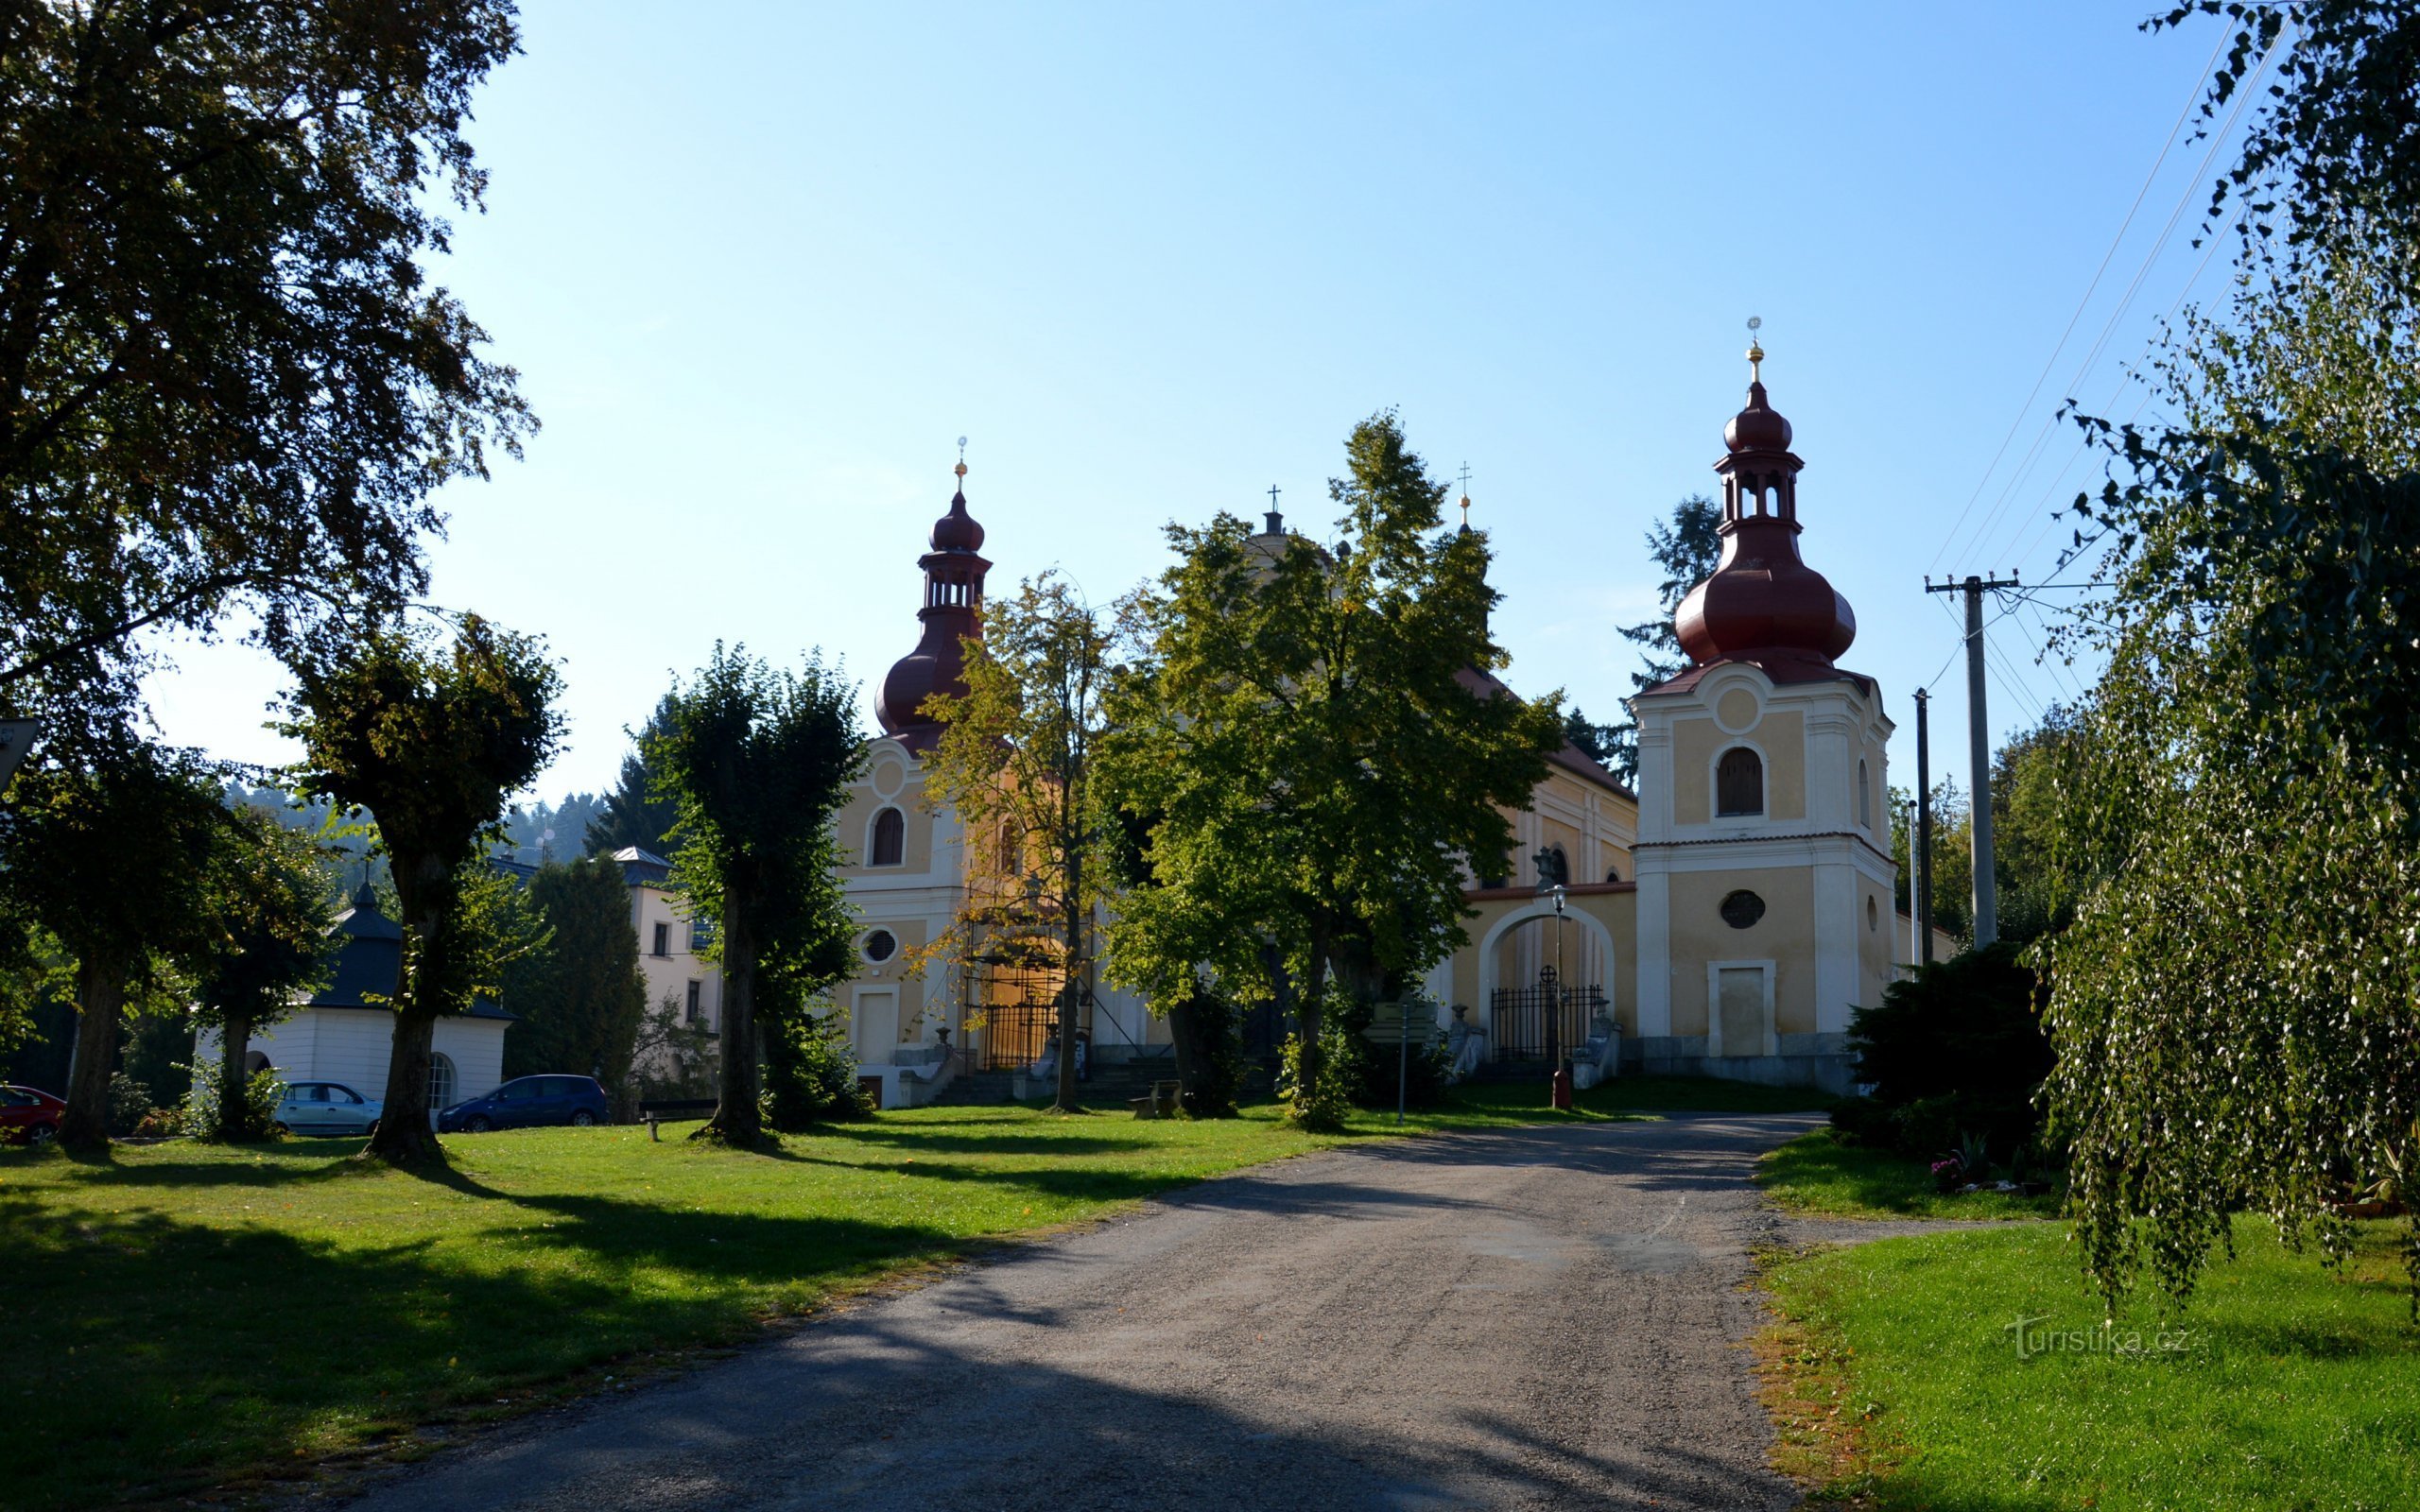 Sudějov - plads med kirken St. Anne